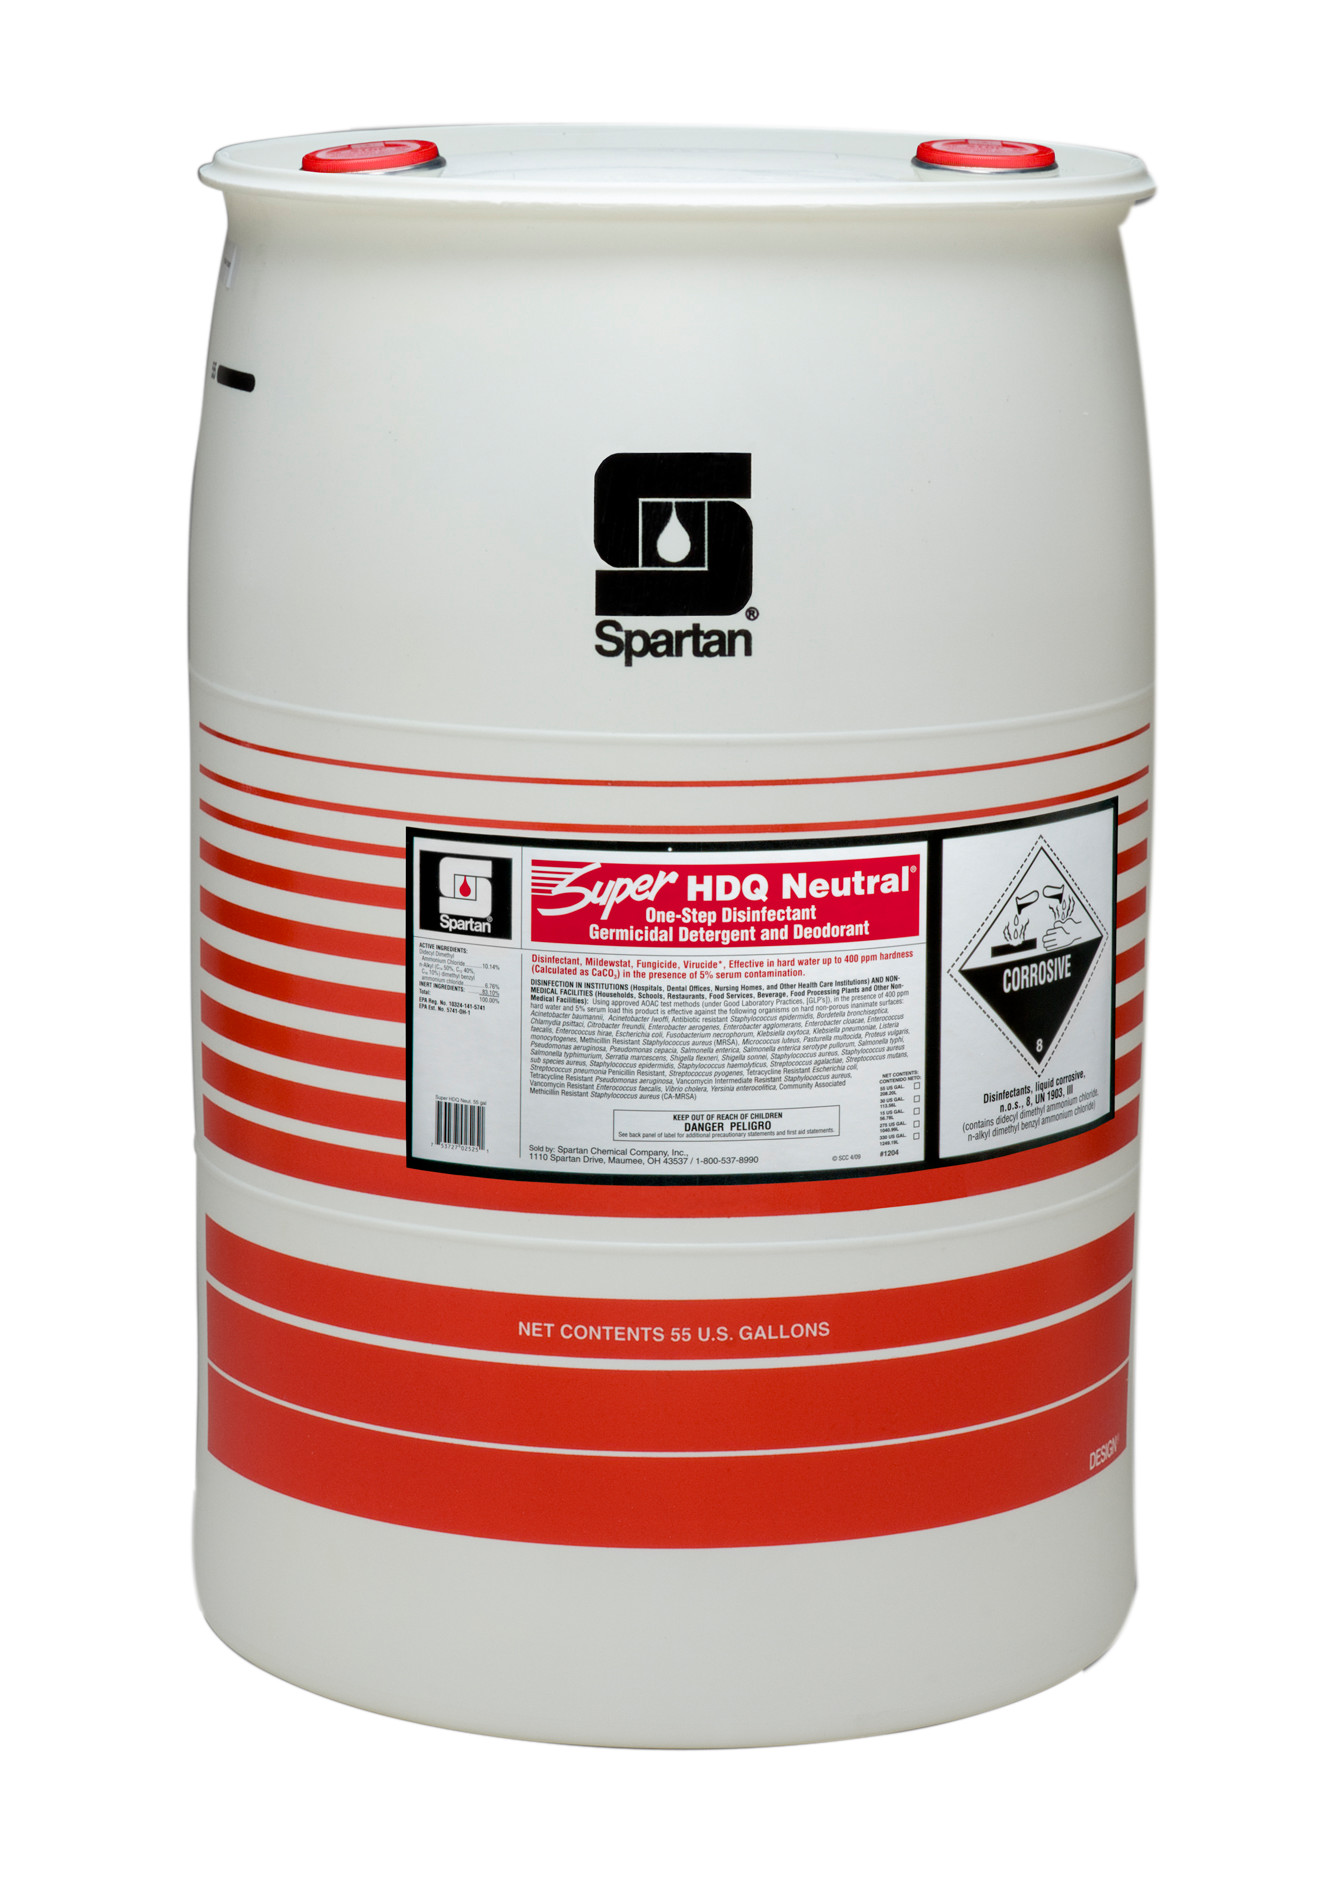 Spartan Chemical Company Super HDQ Neutral, 55 GAL DRUM